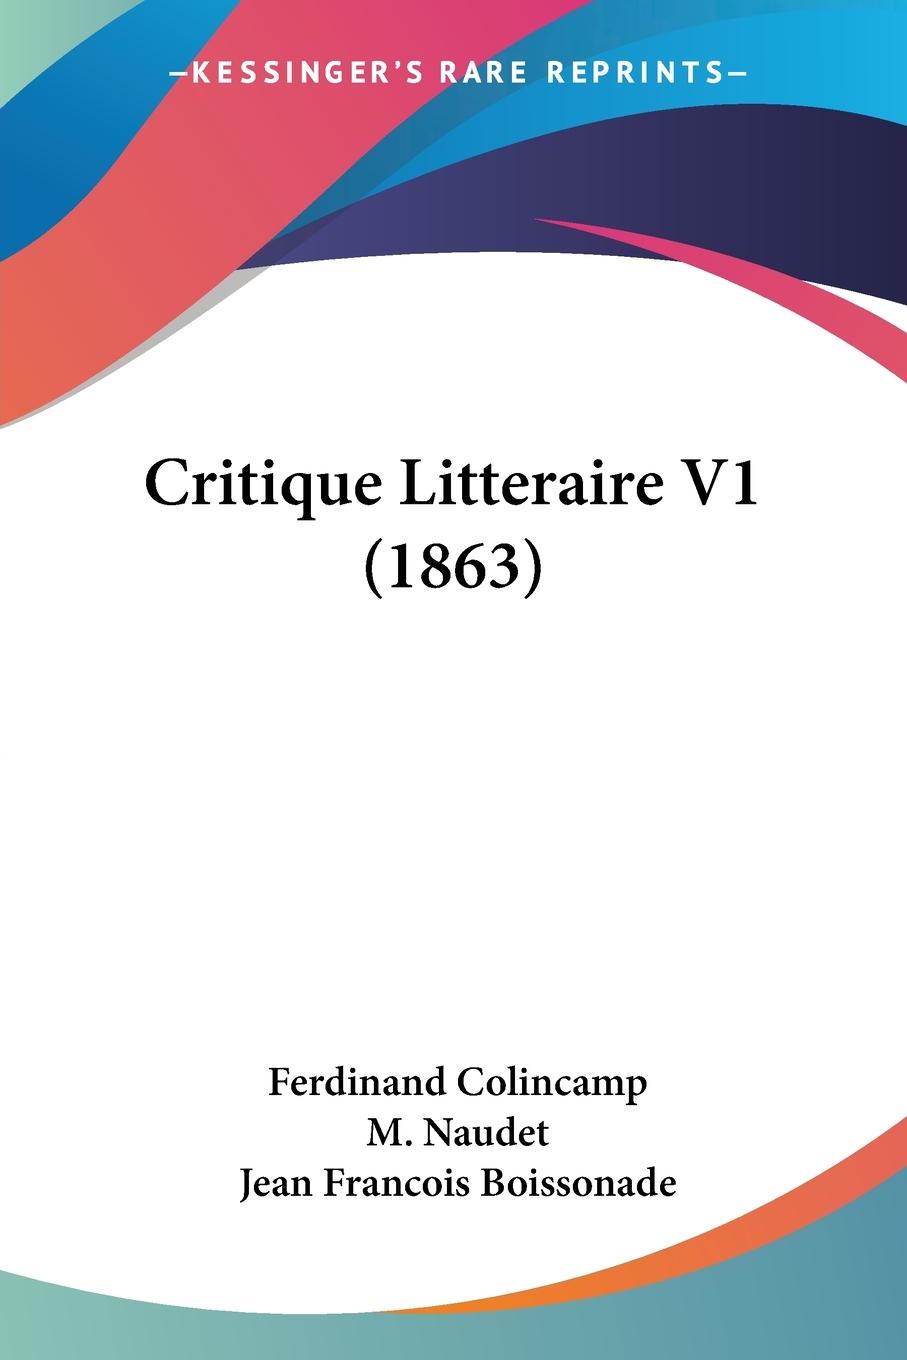 Critique Litteraire V1 (1863) - Colincamp, Ferdinand Naudet, M. Boissonade, Jean Francois